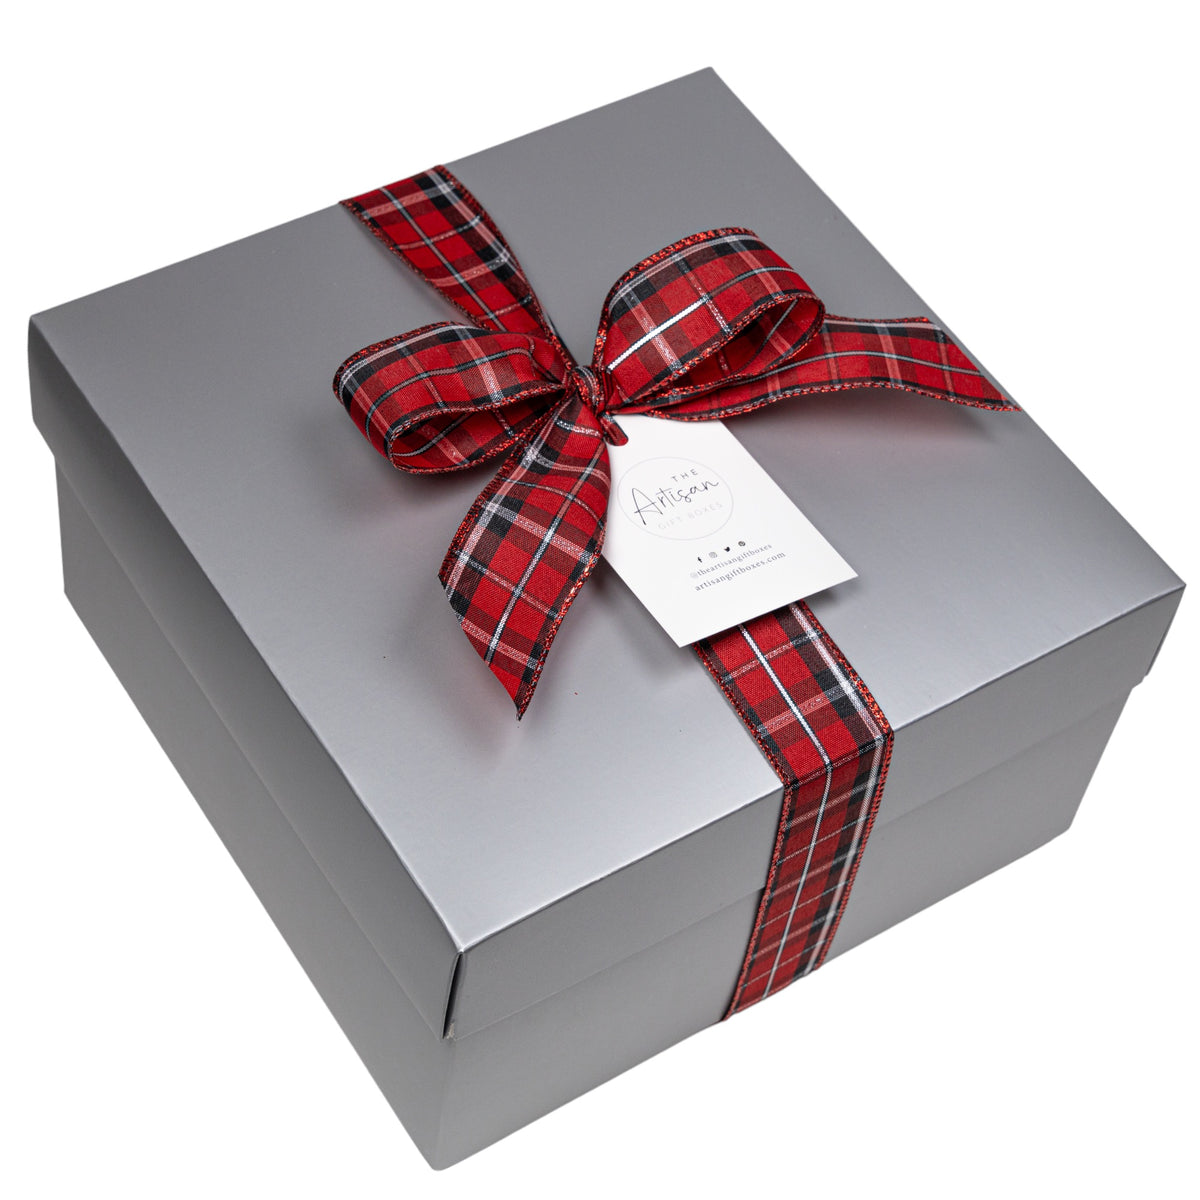 Texas Holiday Treats Gift Box